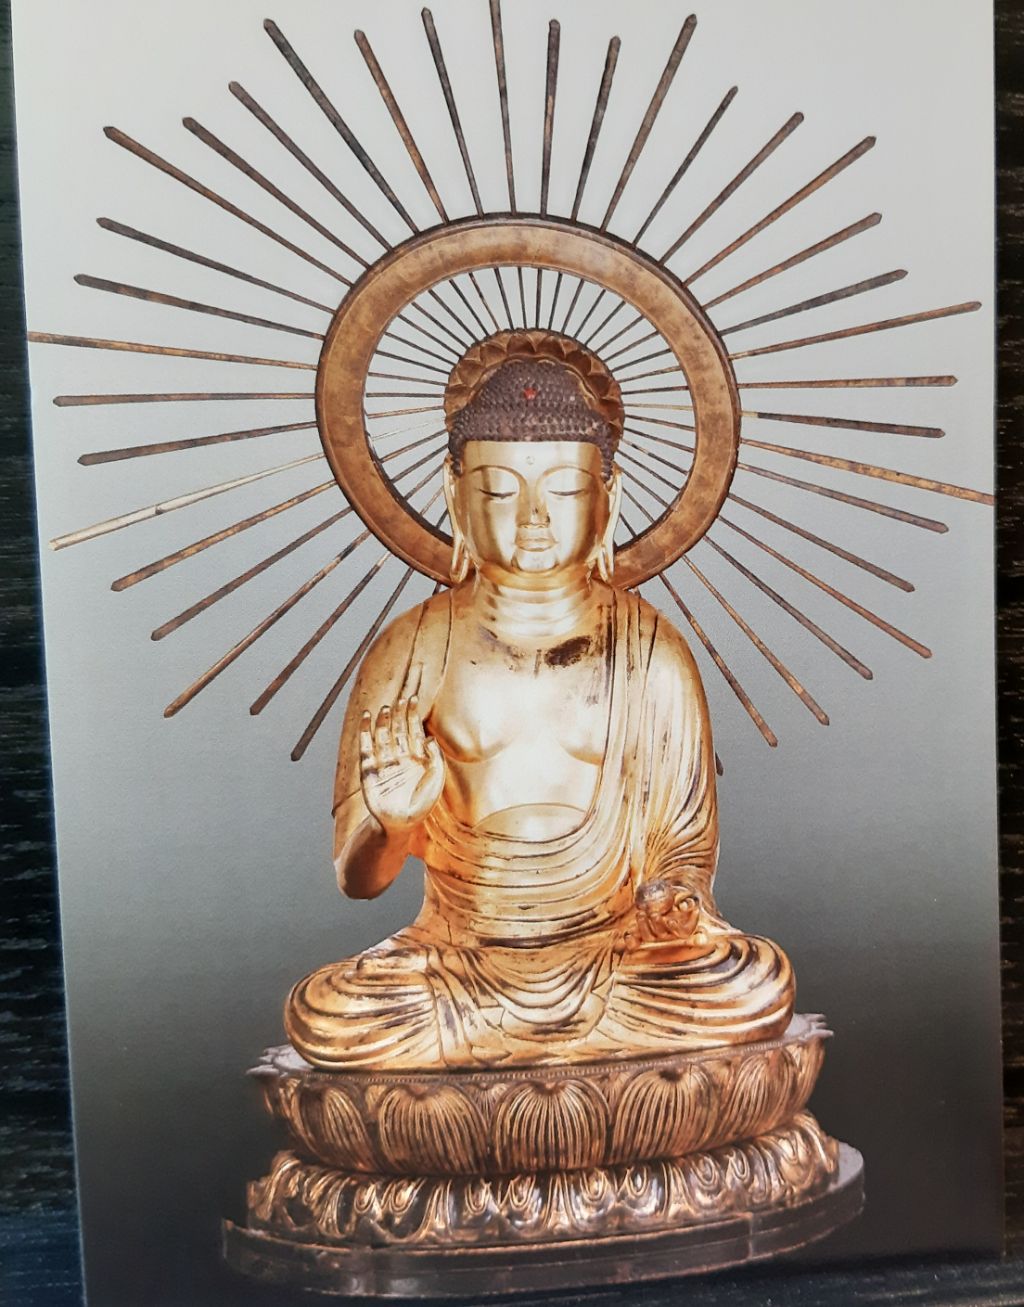 Die Kart zeigt eine Buddha-Statuette. Der Buddha ist ganz golden und trägt eine grosse Gloriole.